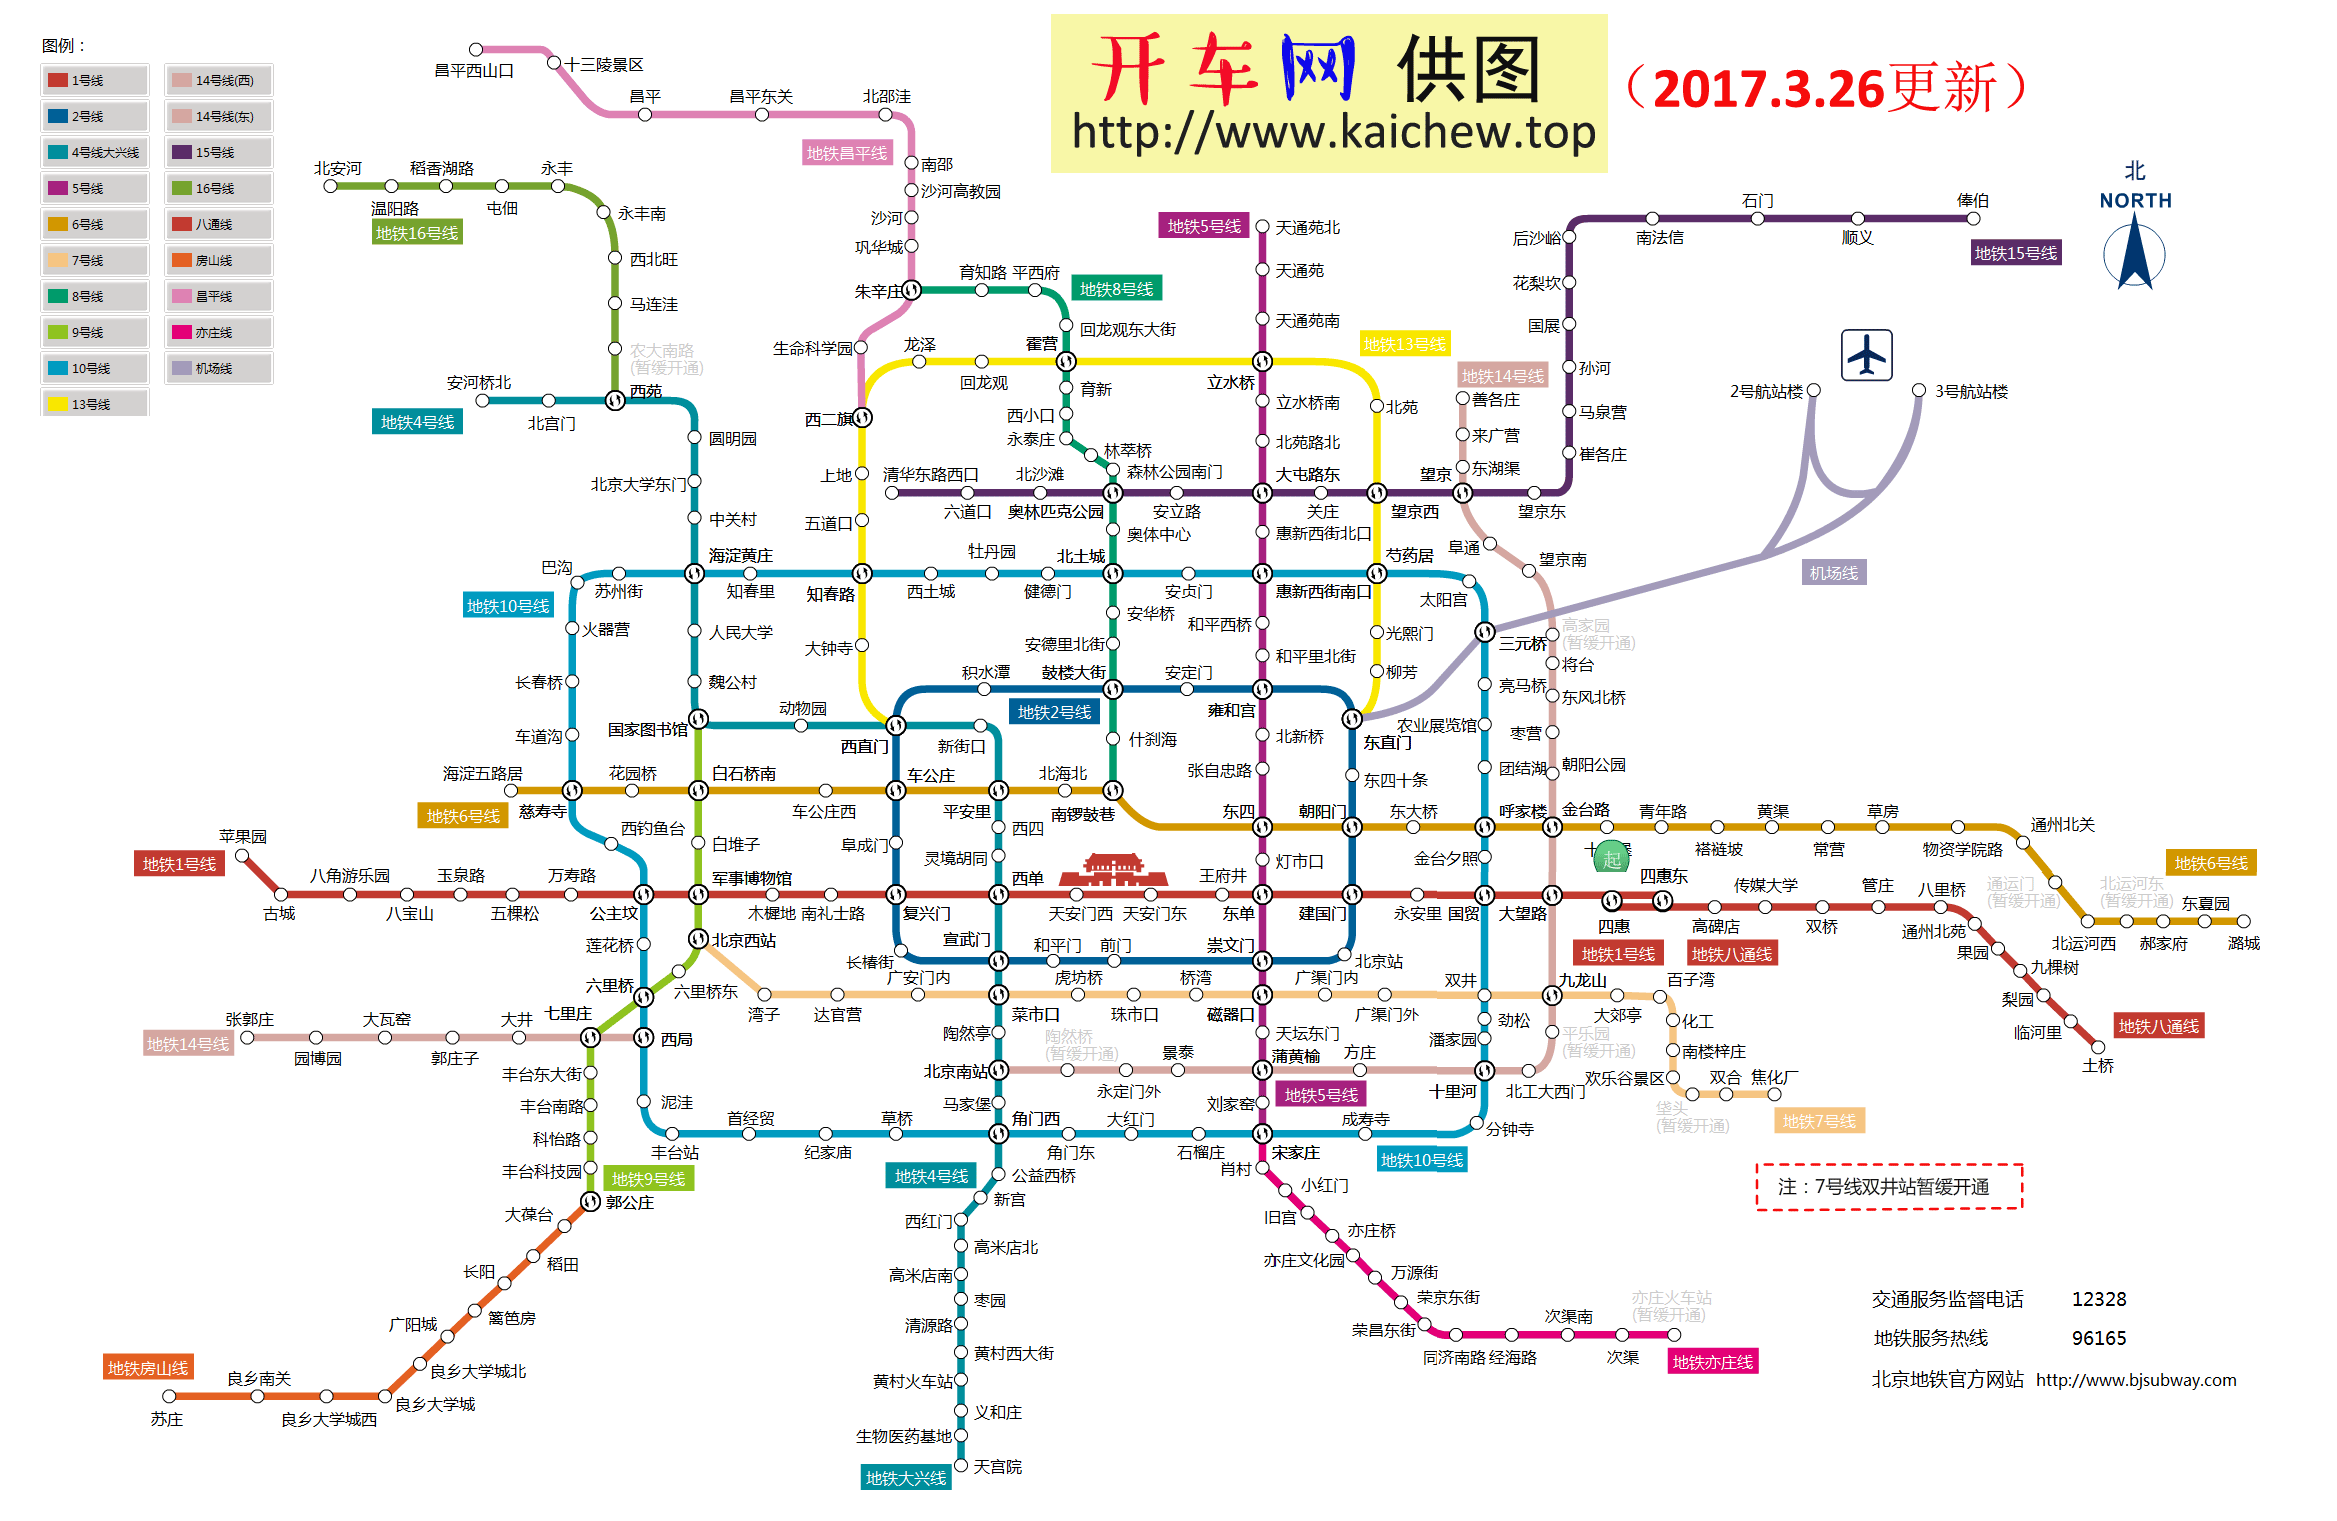 2017年最新版北京地铁线路图(与官方同步更新)_开车网